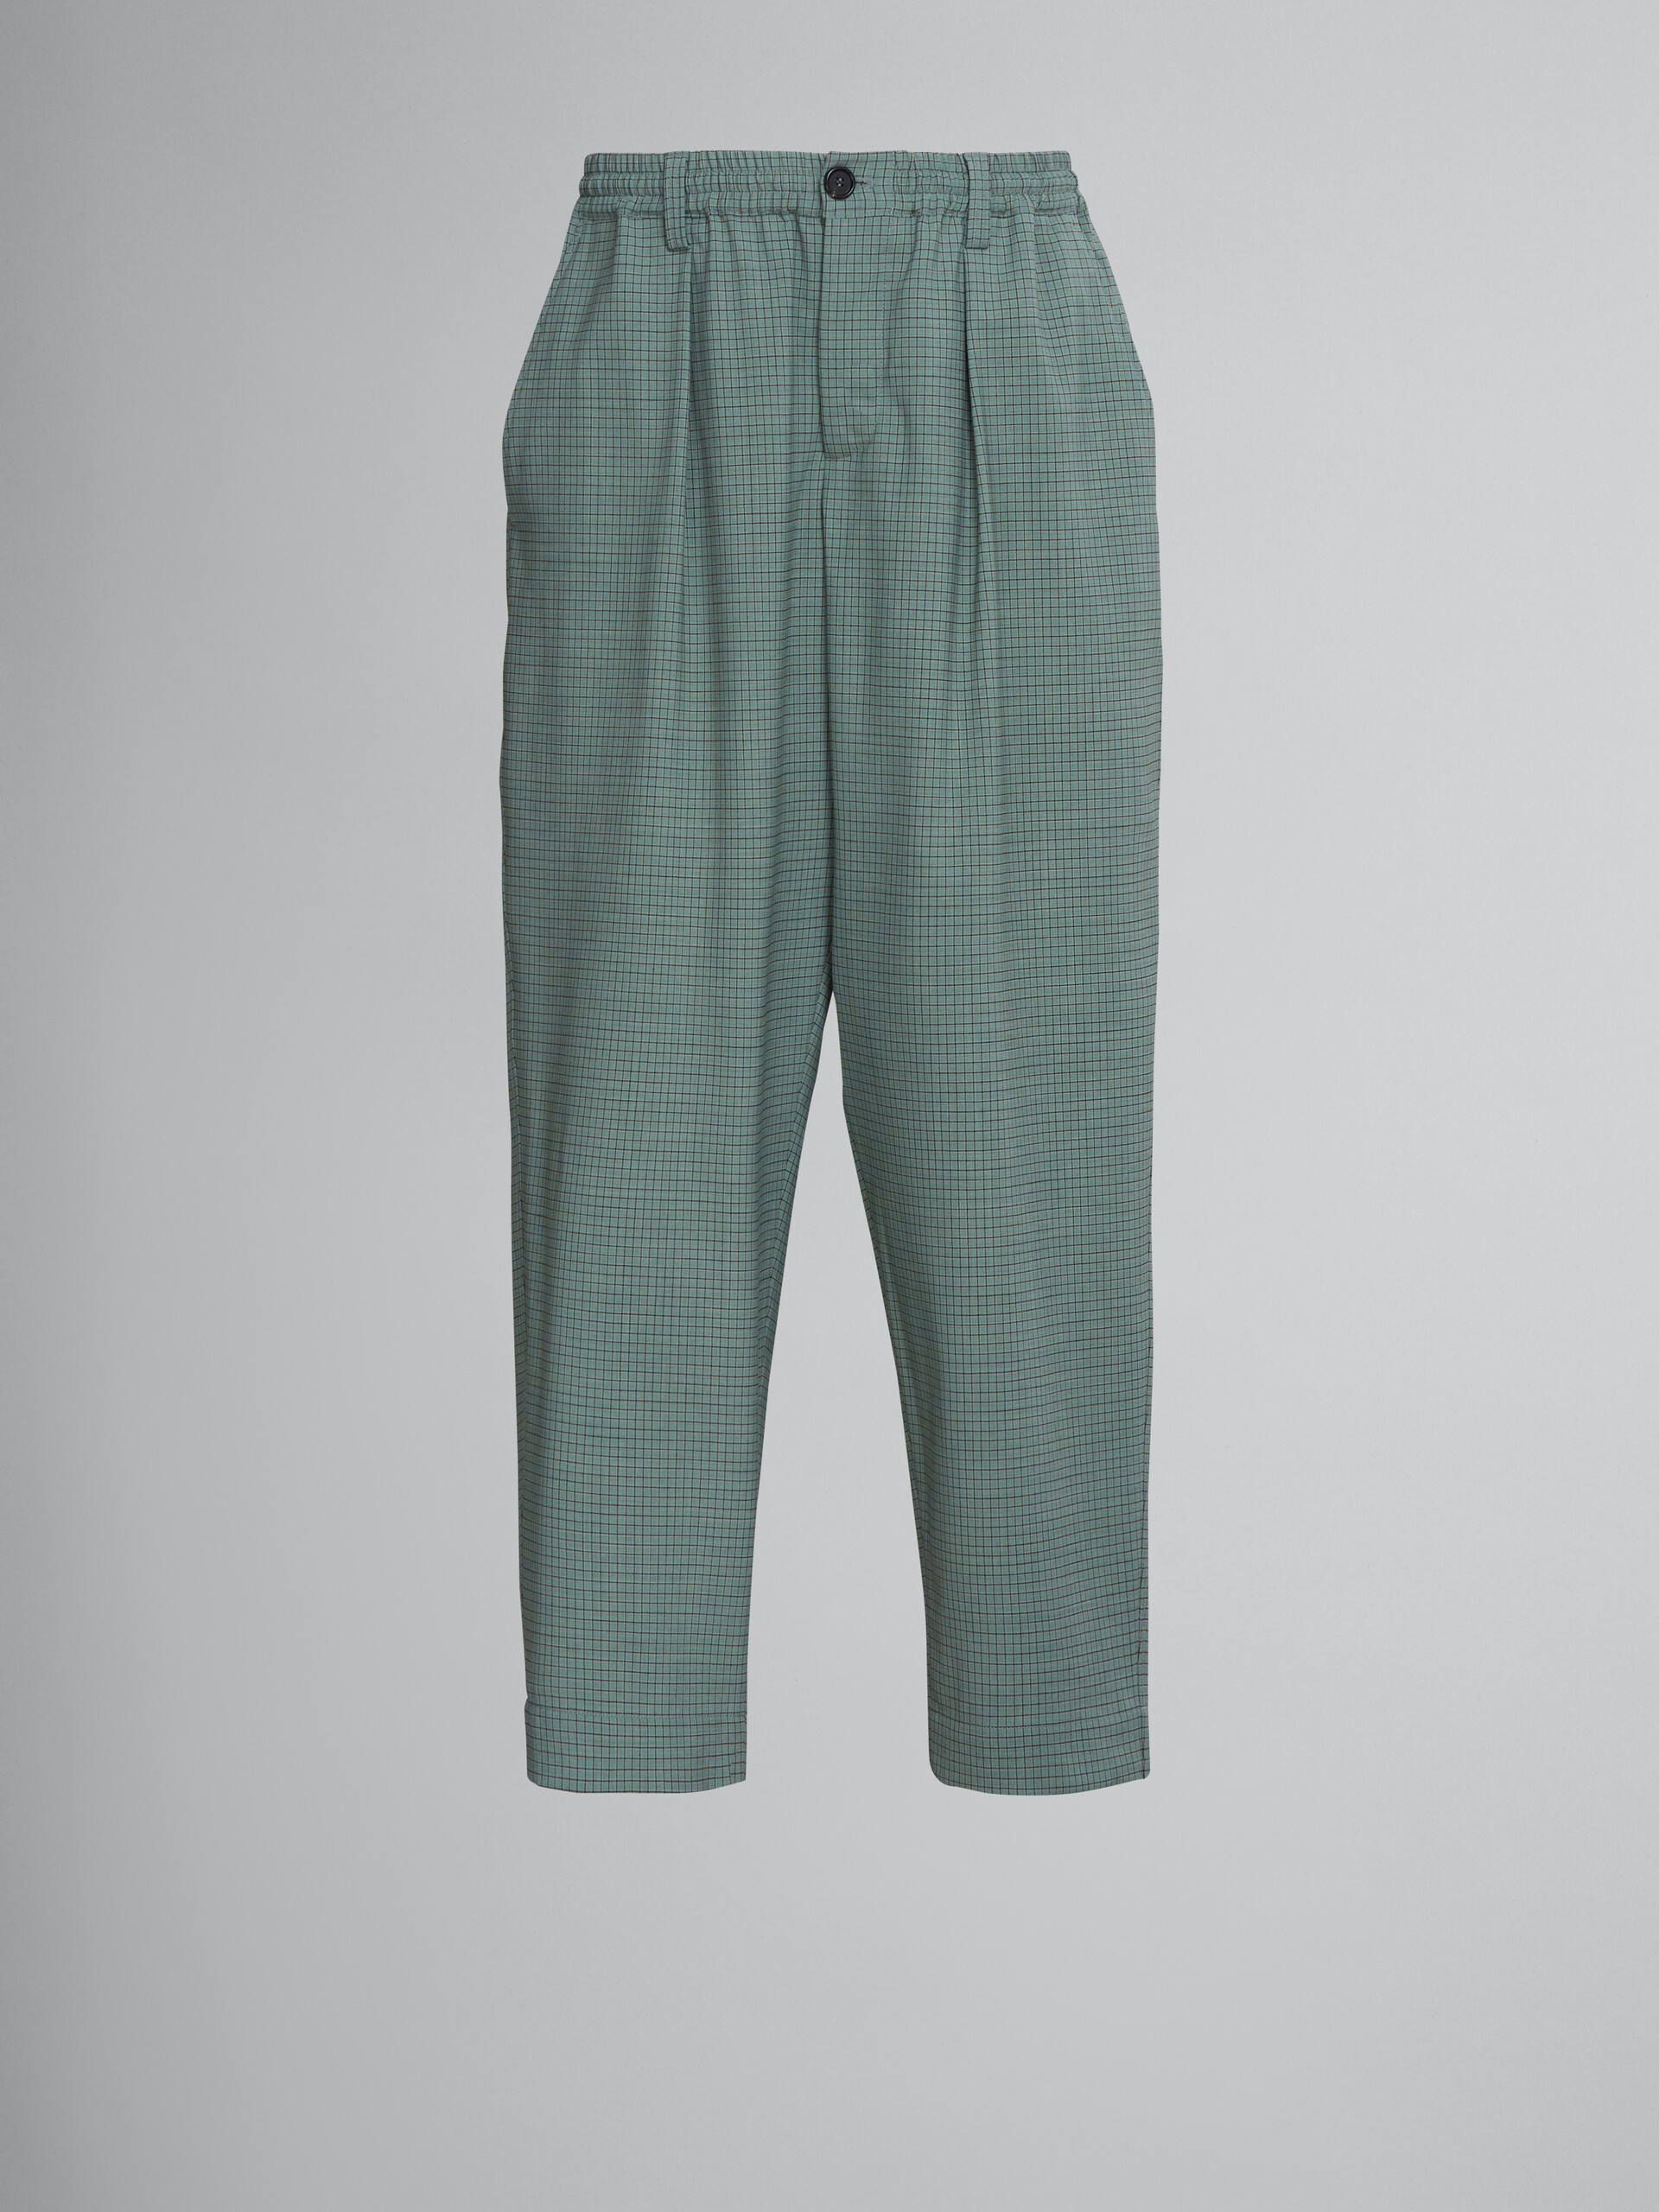 Kurz geschnittene, karierte Hose aus grüner Tropenwolle - Hosen - Image 1